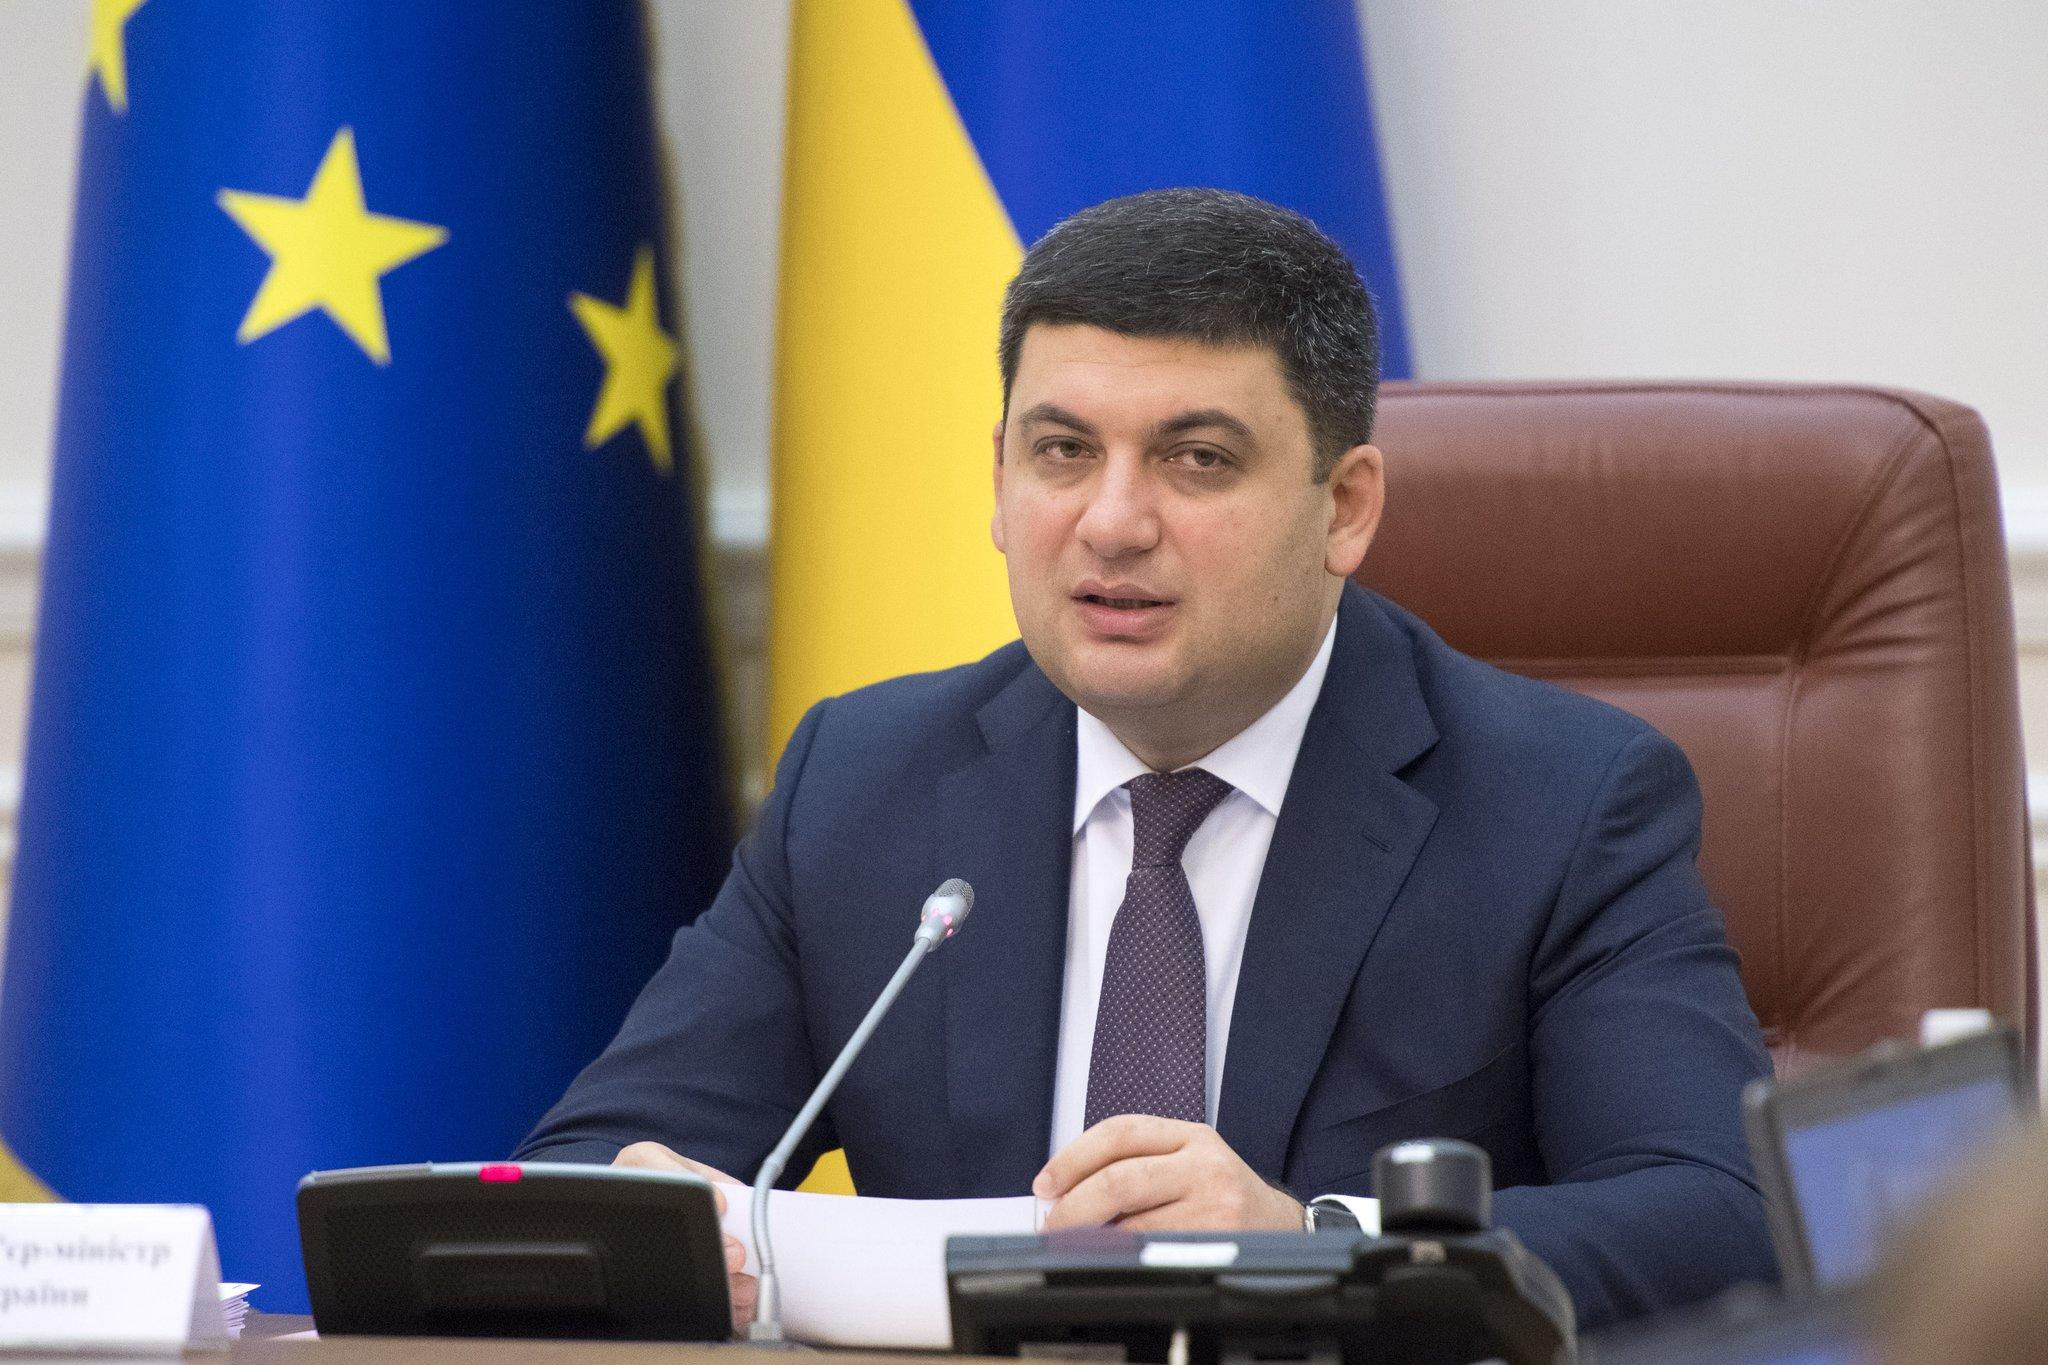 Уряд виділяє безпрецедентні кошти на ремонт і будівництво доріг і вимагає якості робіт, - Прем’єр-міністр України